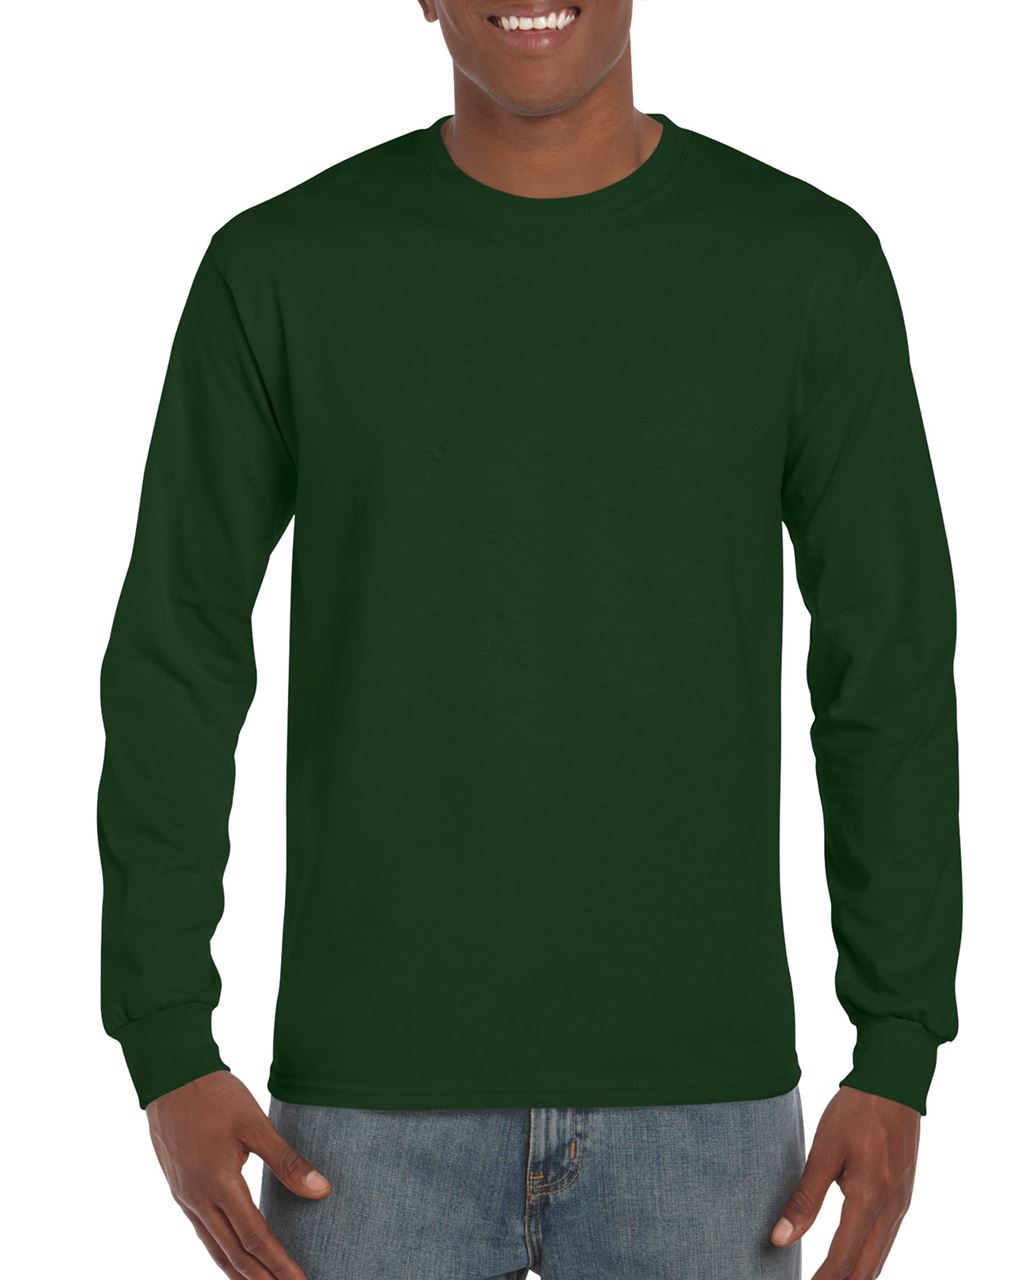 Gildan Ultra Cotton™ Adult Long Sleeve T-shirt - Gildan Ultra Cotton™ Adult Long Sleeve T-shirt - Forest Green